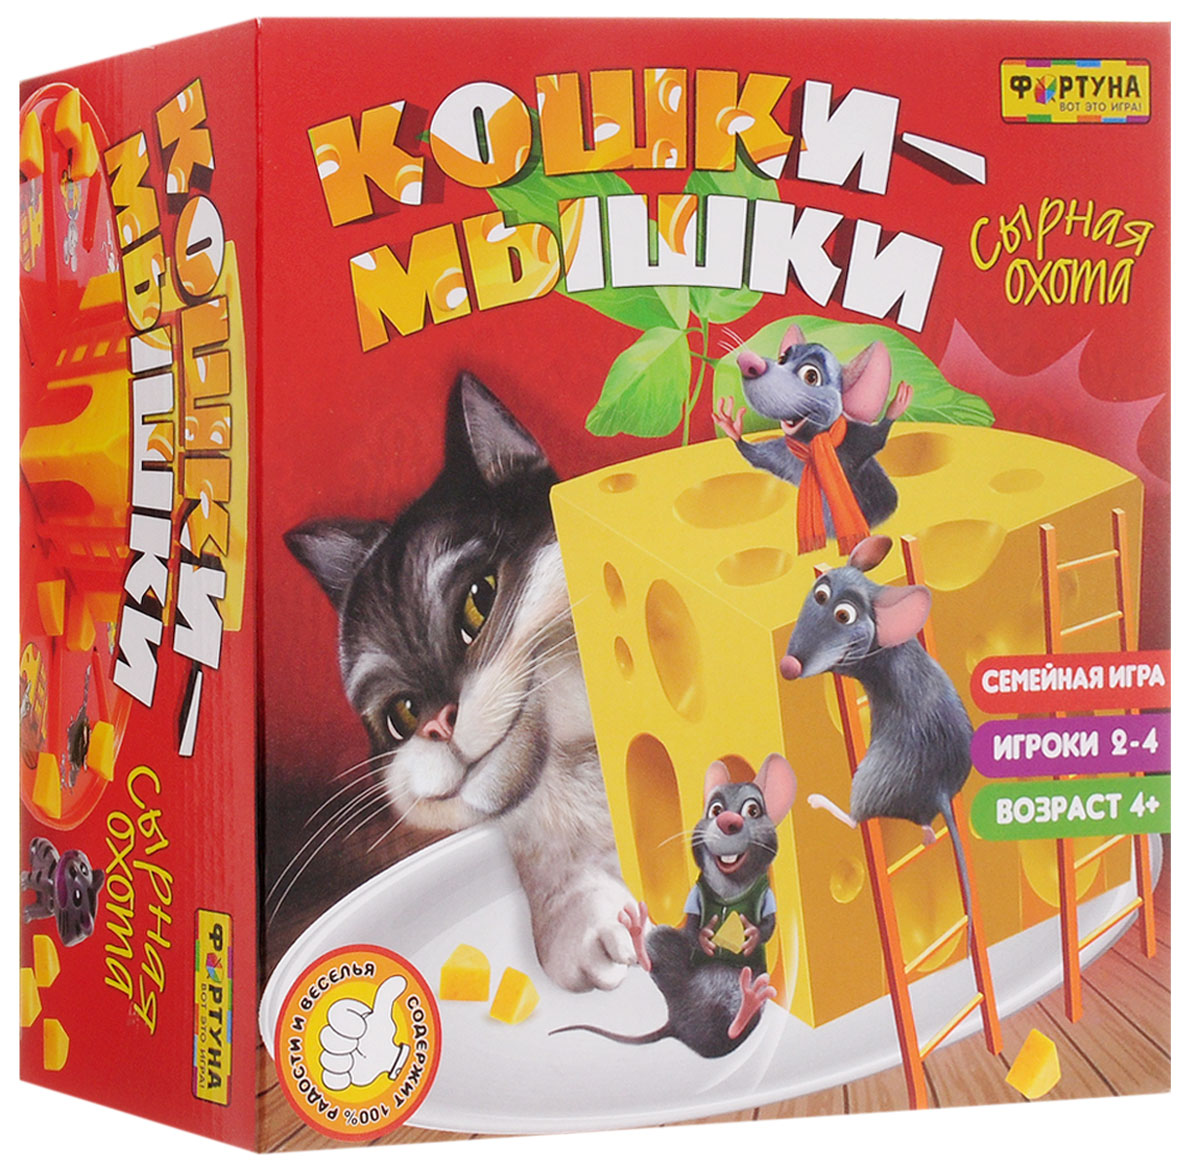 Настольная игра Кошки мышки Сырная погоня — купить в интернет магазине Ozon с быстрой доставкой